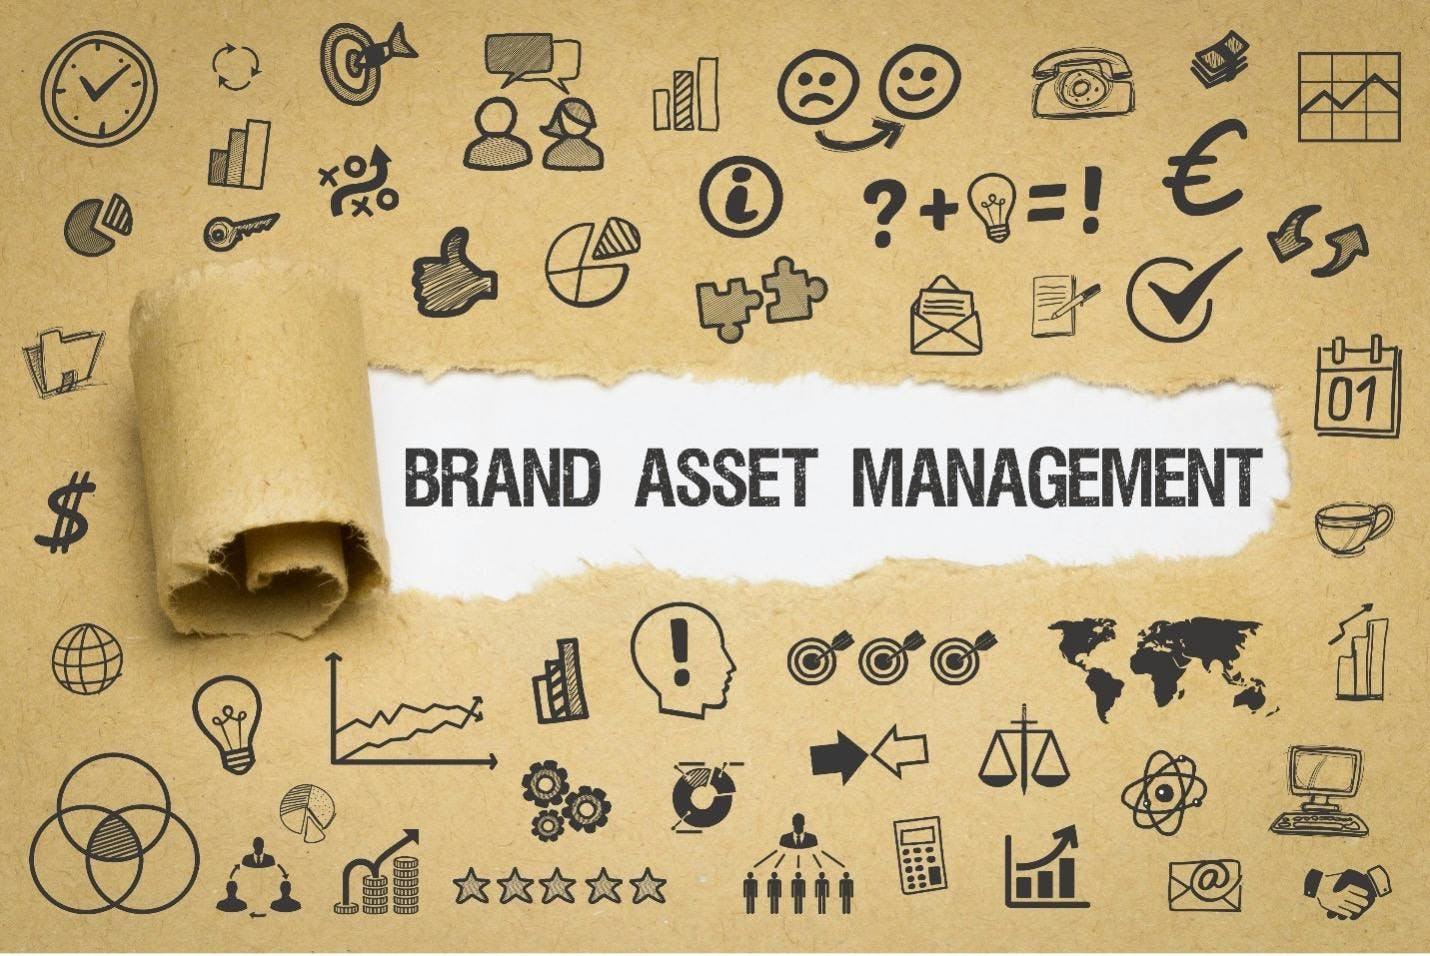 Papier cartonné qu'on déchire au centre pour laisser entrevoir le mot "brand asset management" en majuscule noir / autour, de nombreuses icônes liées au marketing, à l'économie...